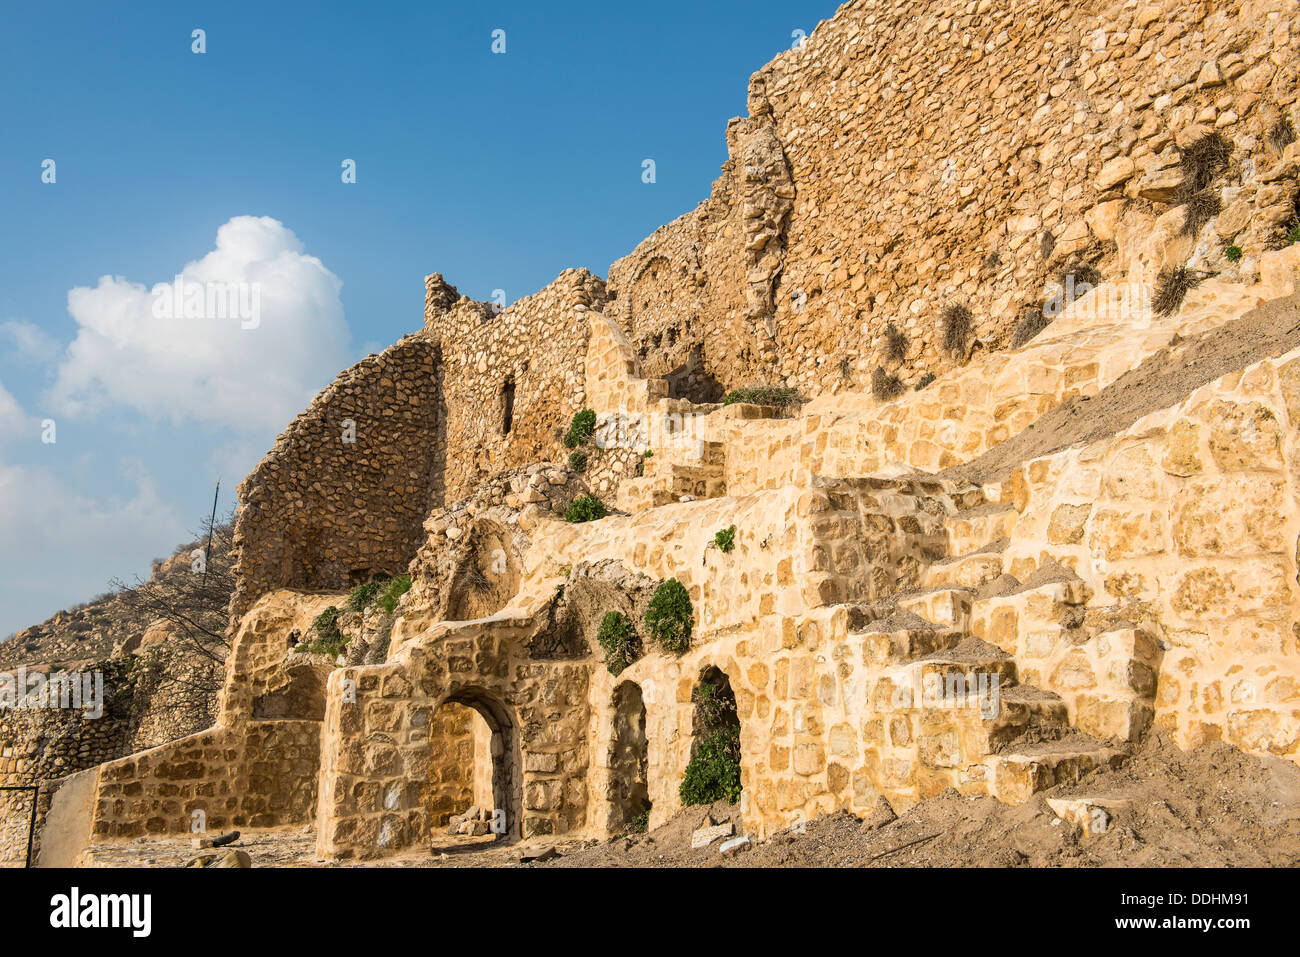 Mar syriaques orthodoxes Mattai monastère, le monastère de Saint Matthieu Banque D'Images